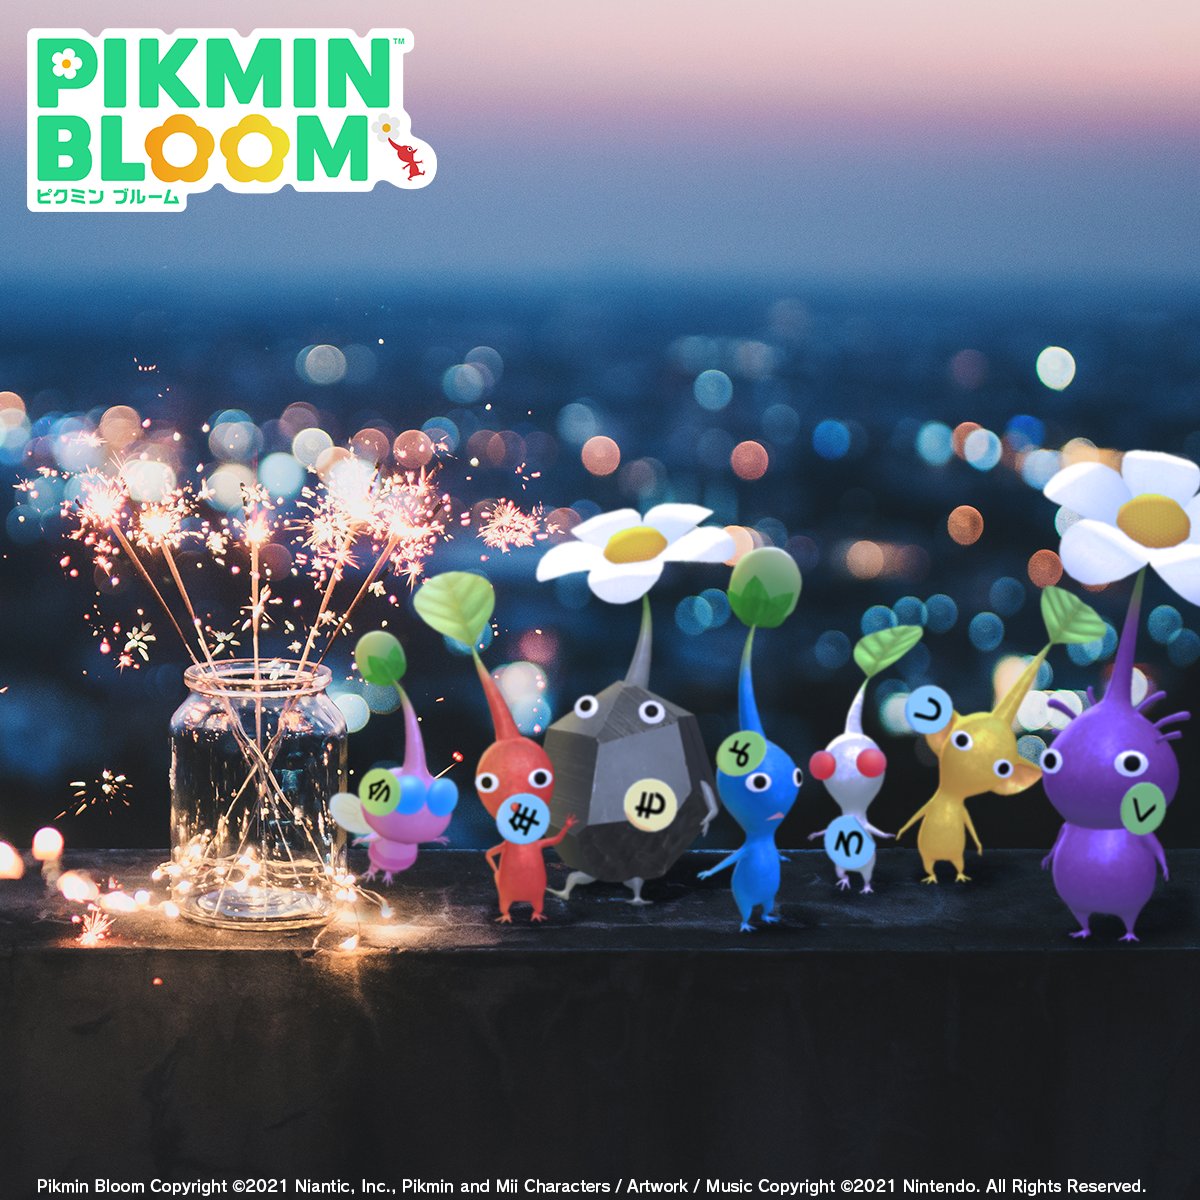 @templenight_low
ありがとうございます。

ピクミンたちがやってきました！
今年もピクミンブルームをよろしくお願いします！

#ピクミンブルーム